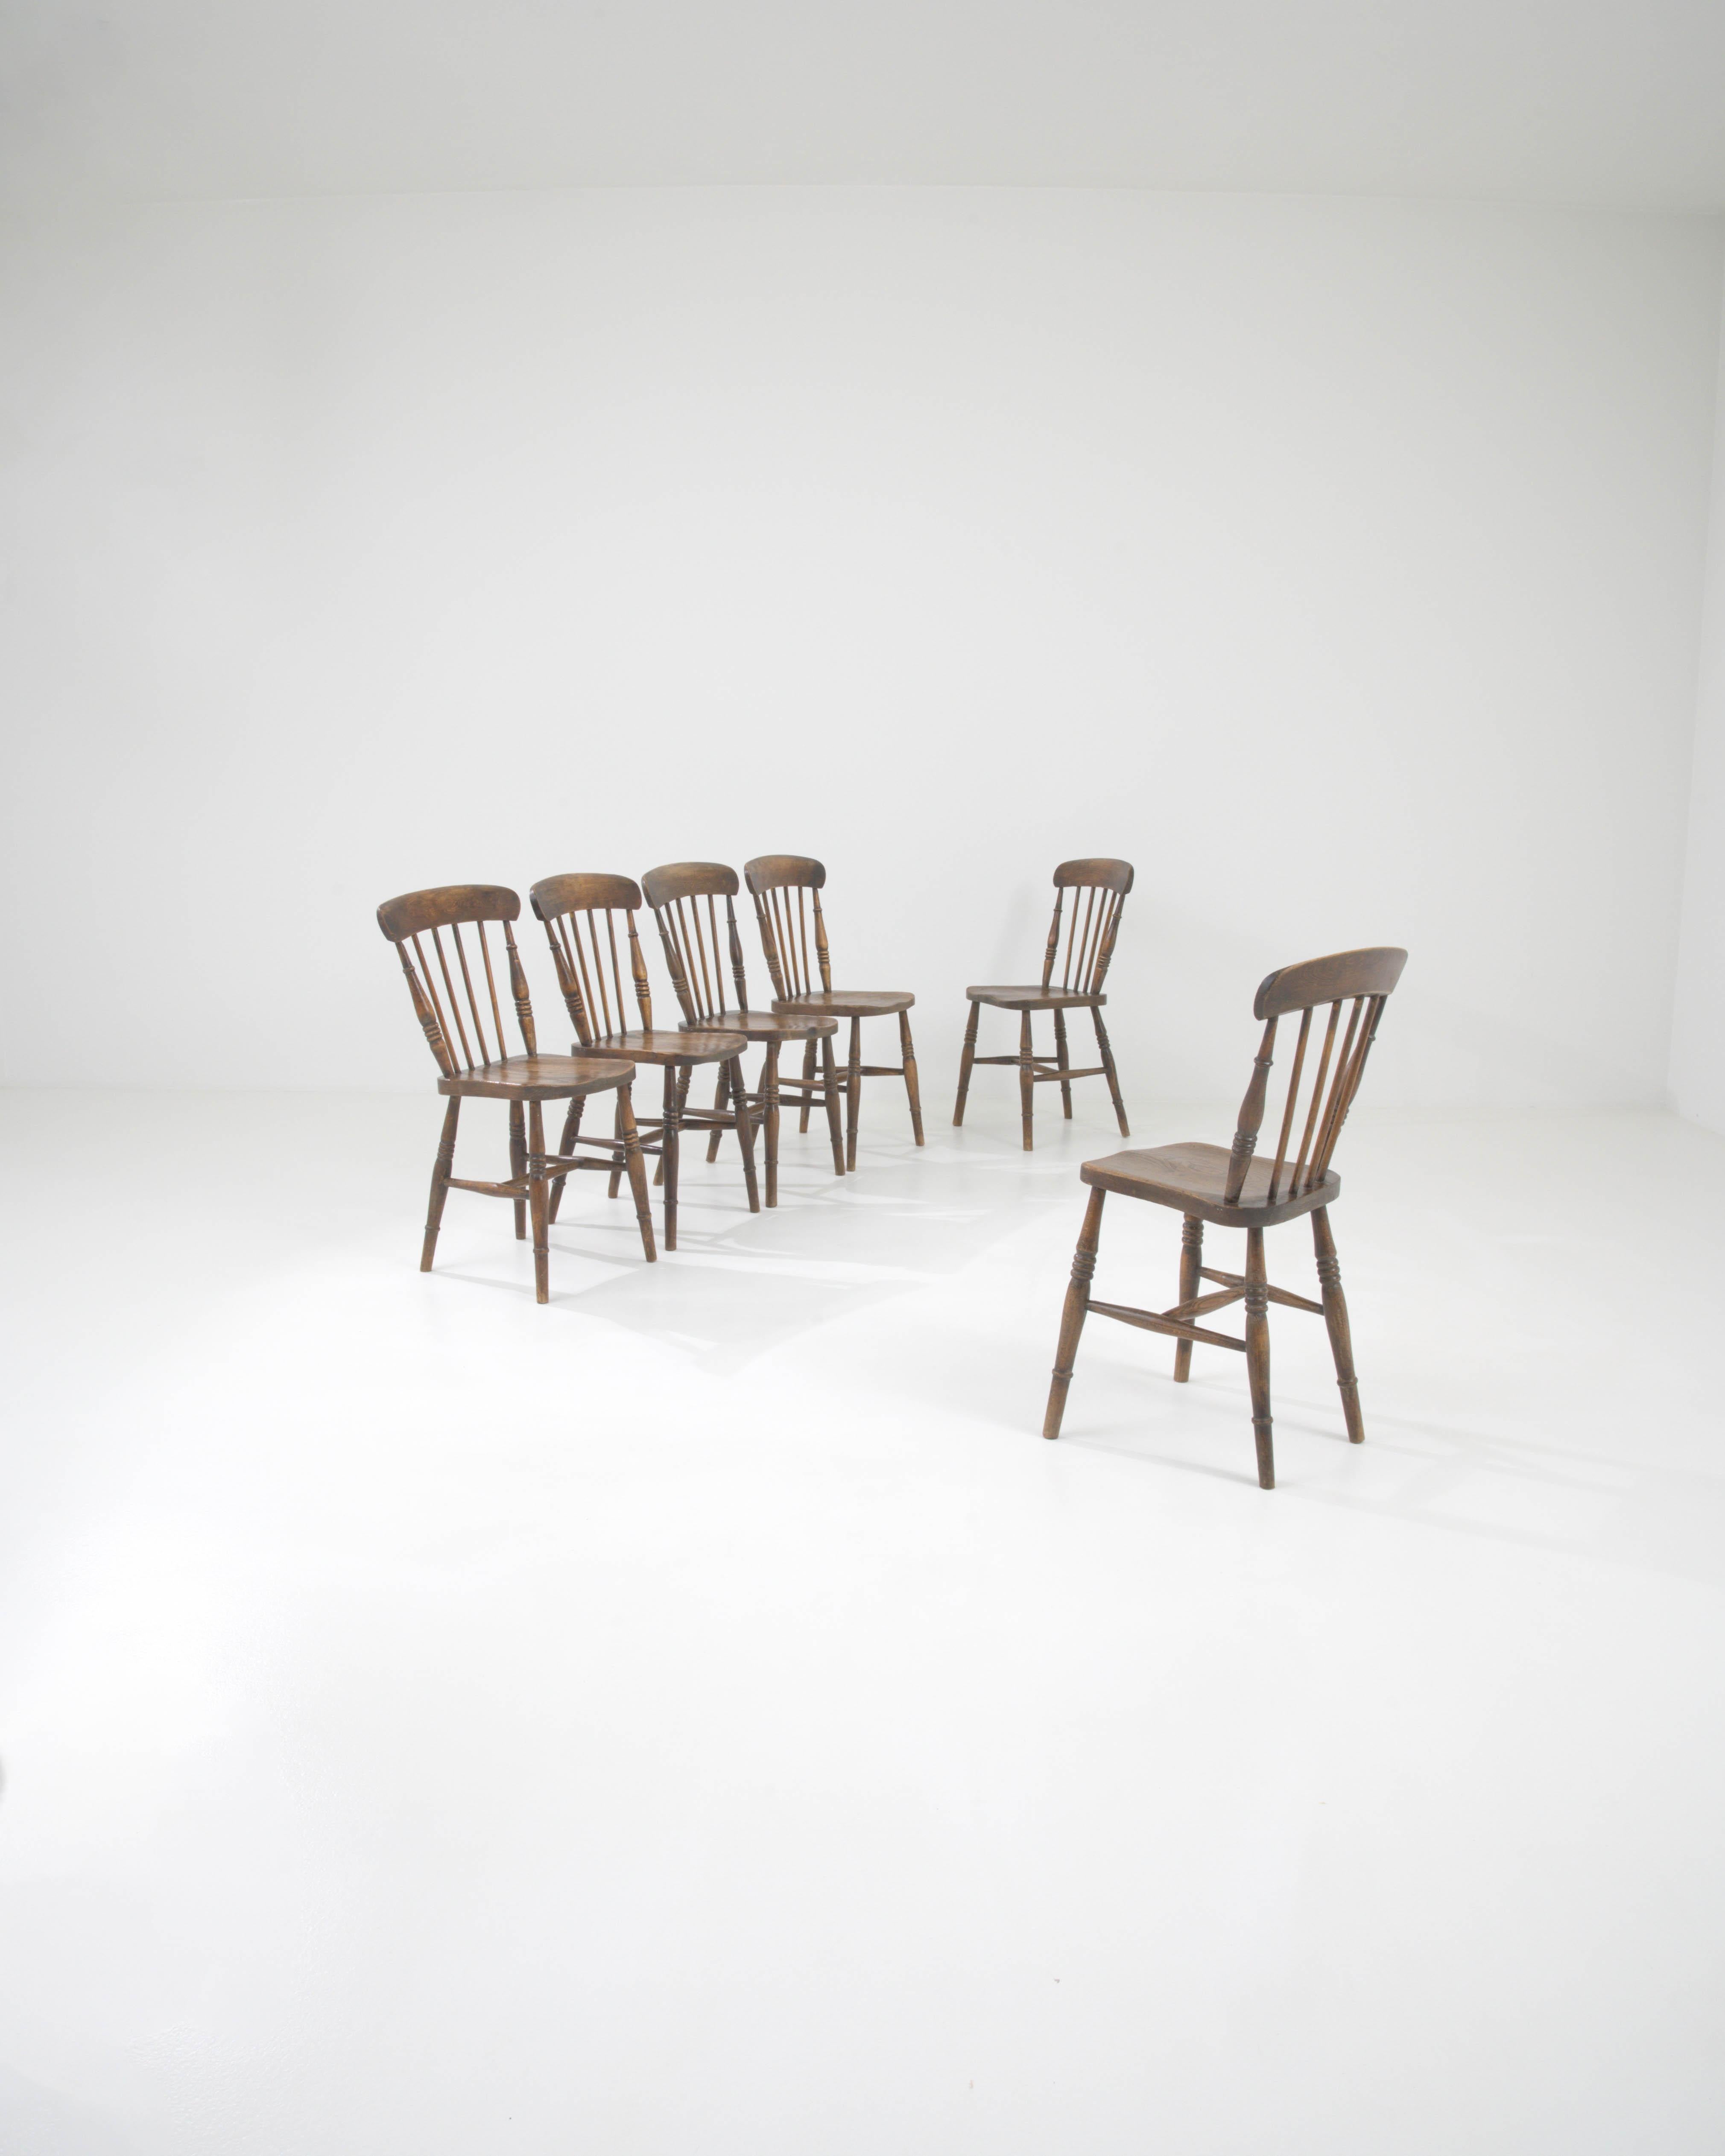 Dieses exquisite Set von Esszimmerstühlen aus Holz aus dem frühen 20. Jahrhundert steht in der Tradition klassischer Handwerkskunst. Jeder Stuhl dieser Collection'S ist ein Zeugnis zeitlosen Designs, mit einer geschwungenen oberen Schiene und